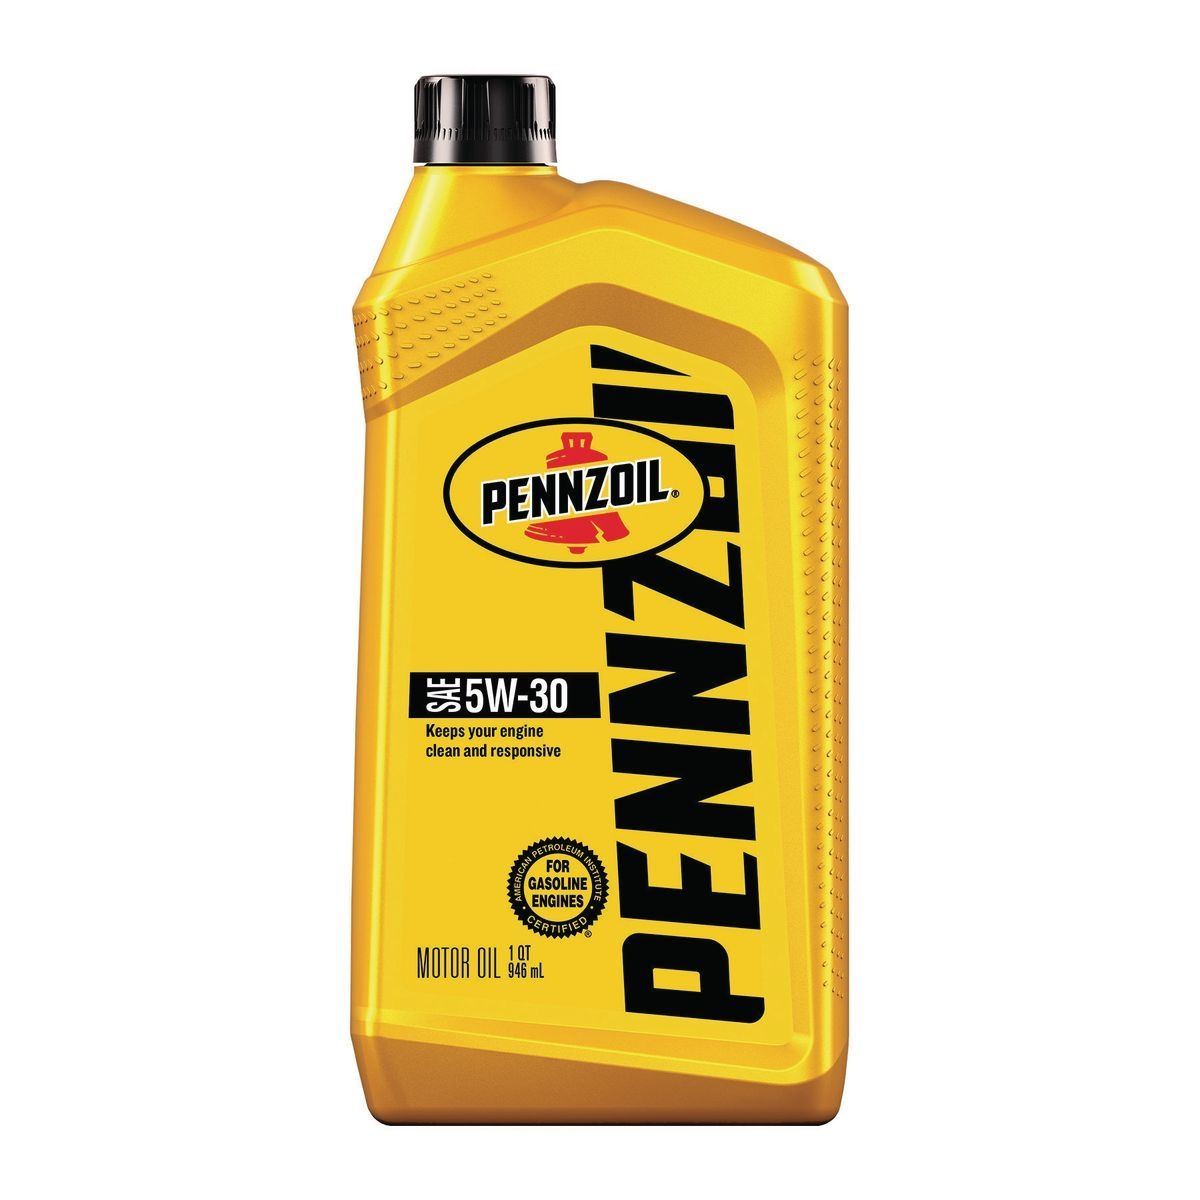 PENNZOIL 5W-30 Motor Oil